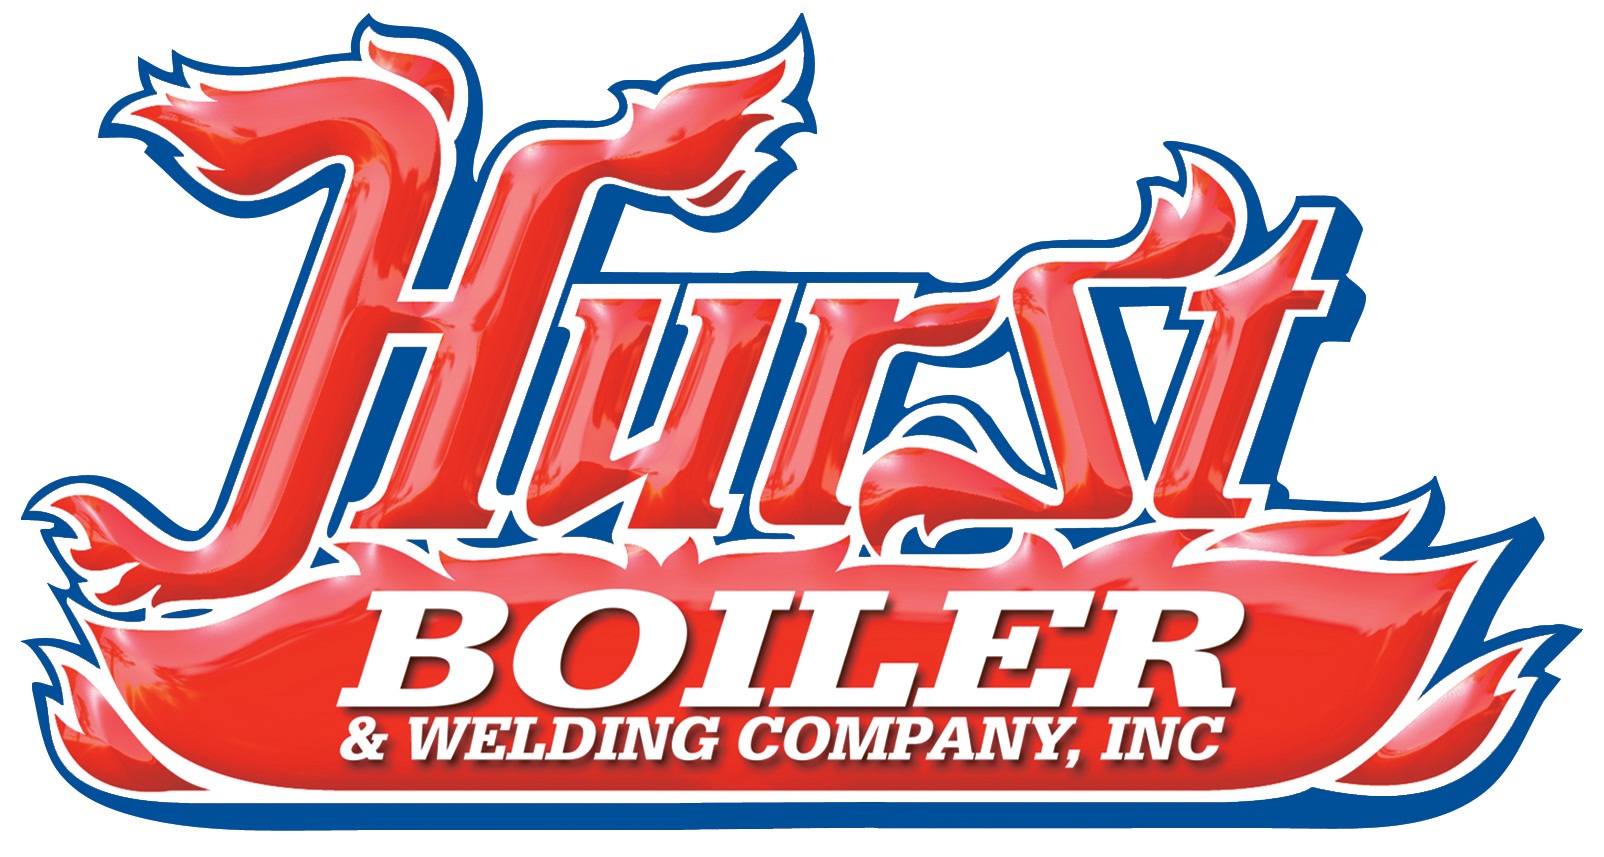 www.HurstBoiler.com, Hurst Boiler & Welding Co.